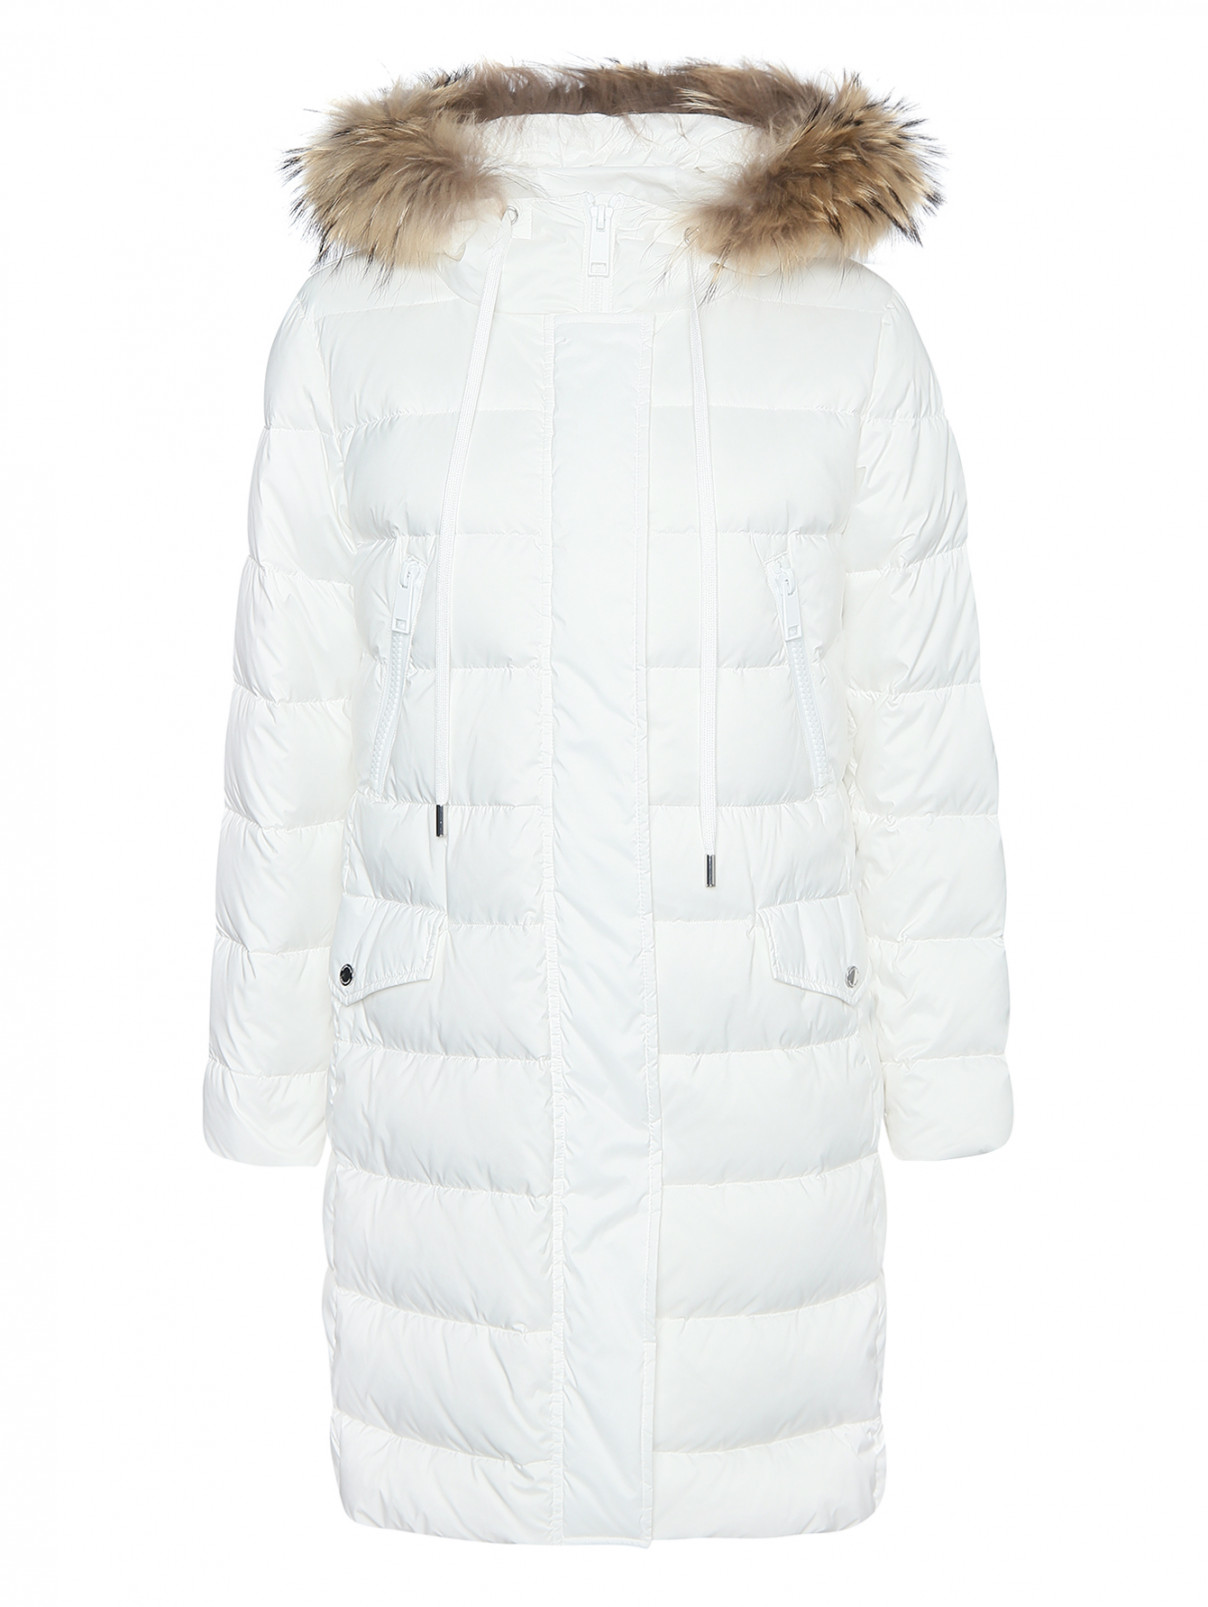 Куртка с мехом енота Marina Rinaldi  –  Общий вид  – Цвет:  Белый